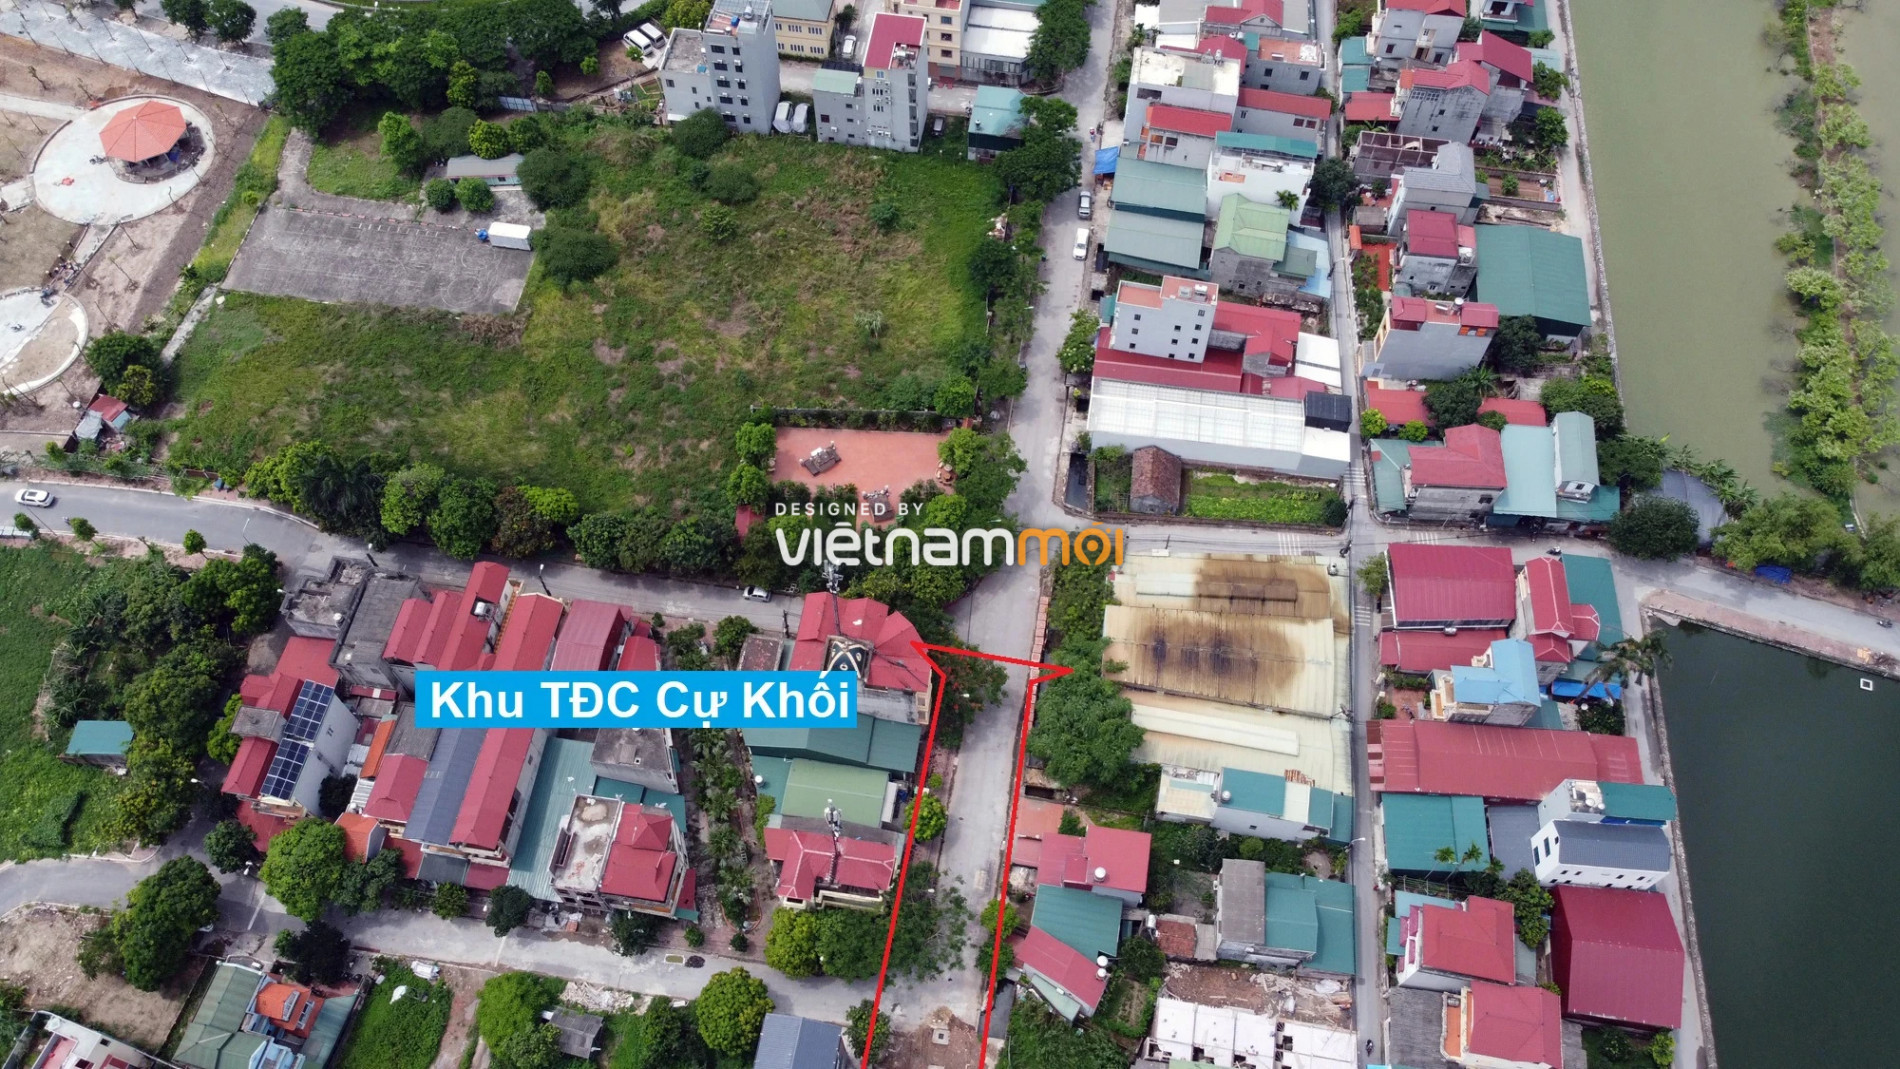 Những khu đất sắp thu hồi để mở đường ở phường Cự Khối, Long Biên, Hà Nội (phần 2) - Ảnh 6.